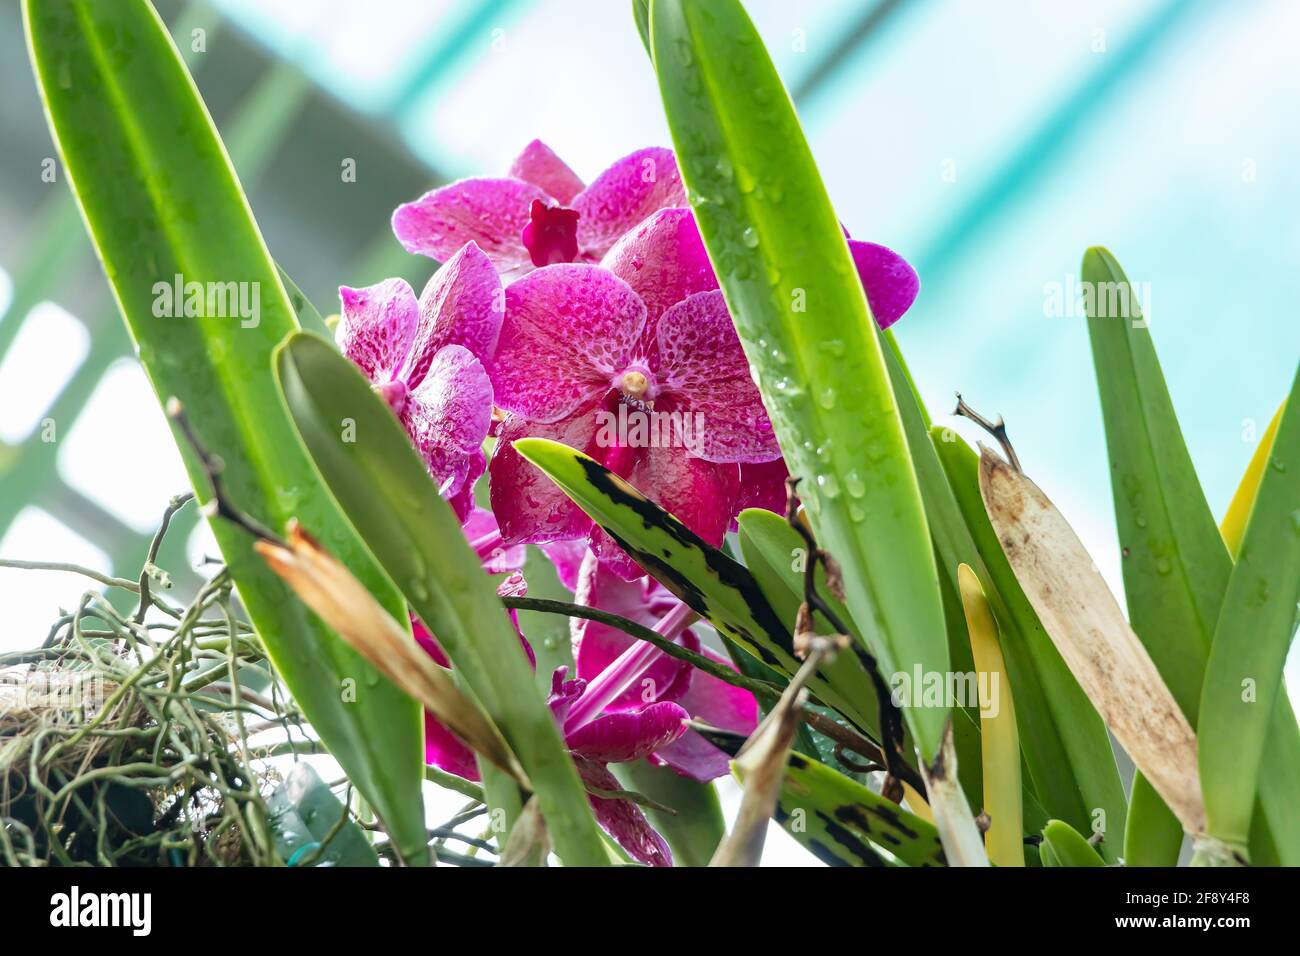 Ascocenda orchid immagini e fotografie stock ad alta risoluzione - Alamy